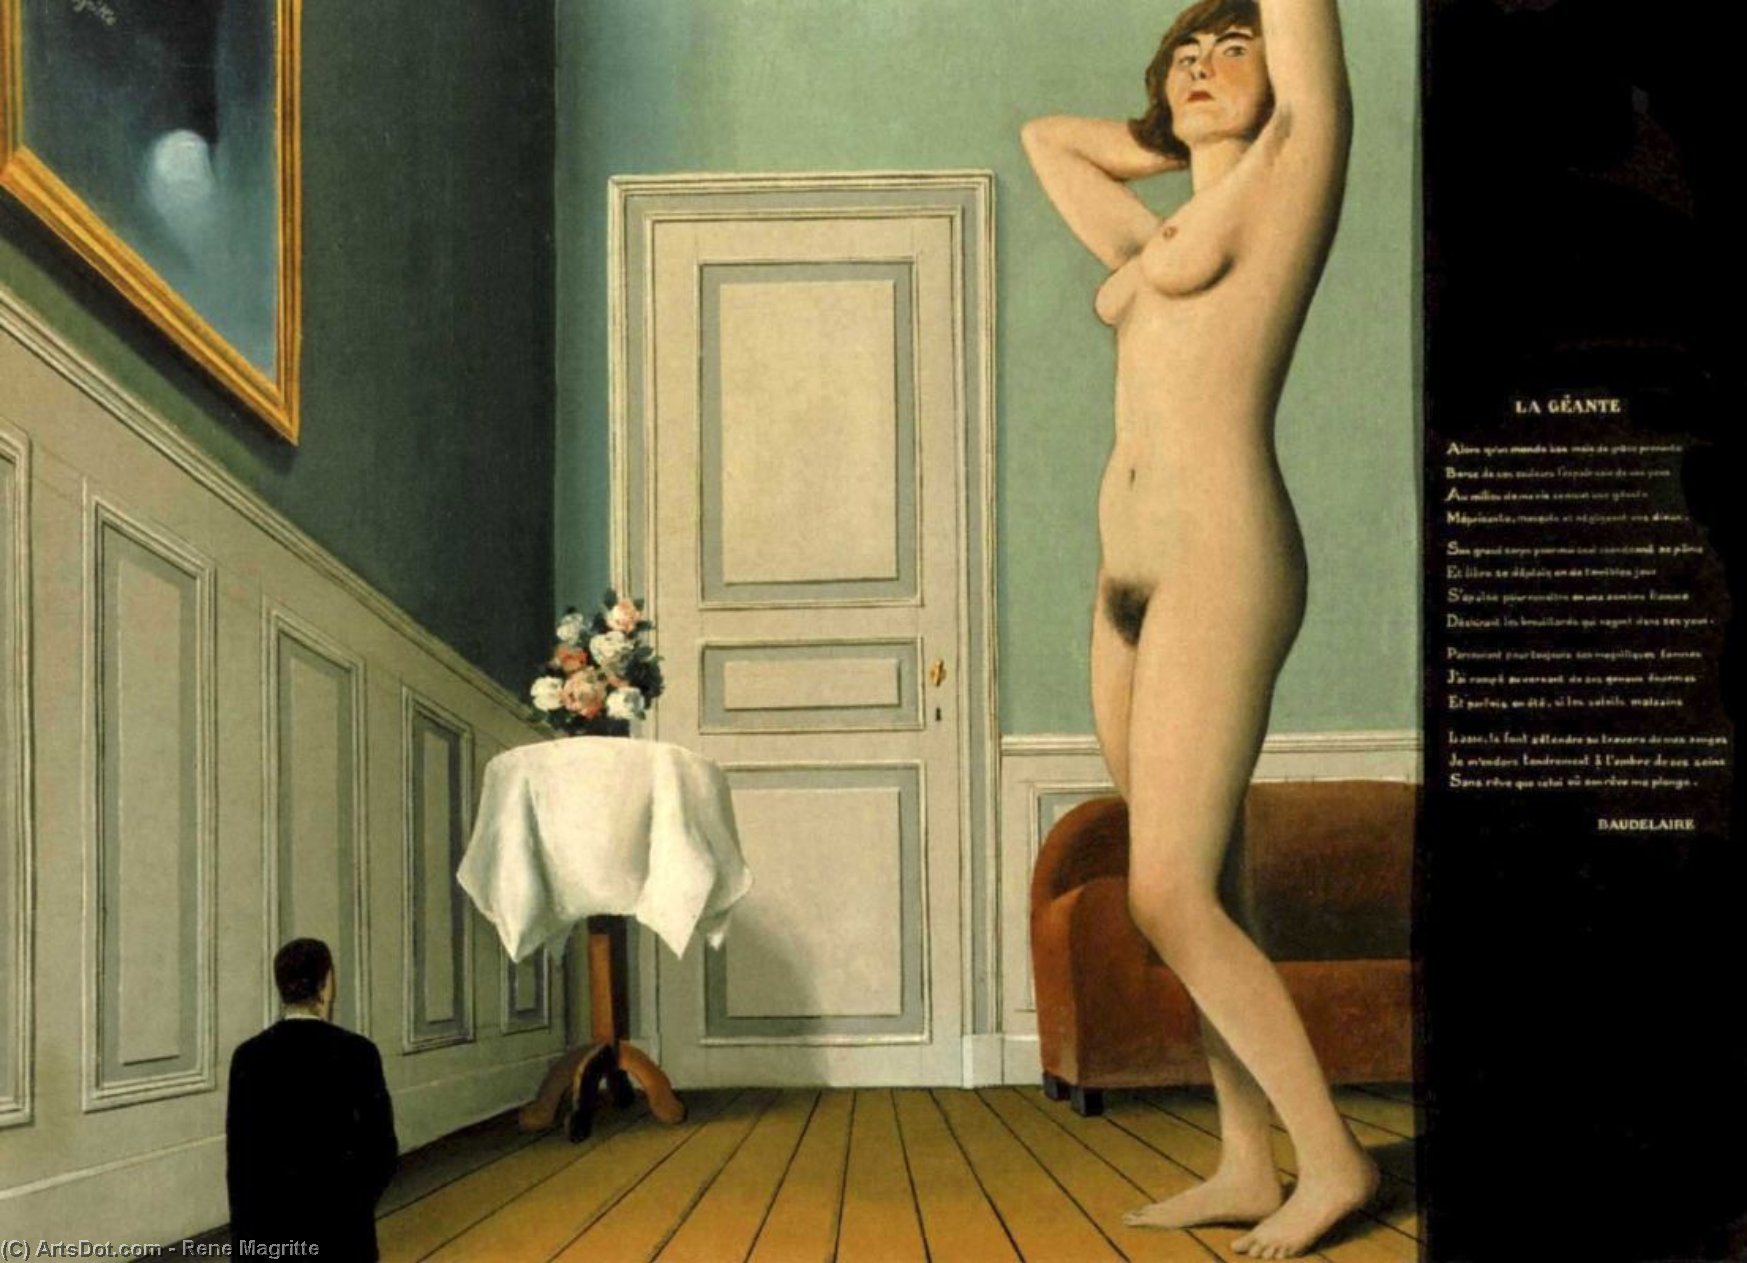 Wikioo.org - Bách khoa toàn thư về mỹ thuật - Vẽ tranh, Tác phẩm nghệ thuật Rene Magritte - The giantess